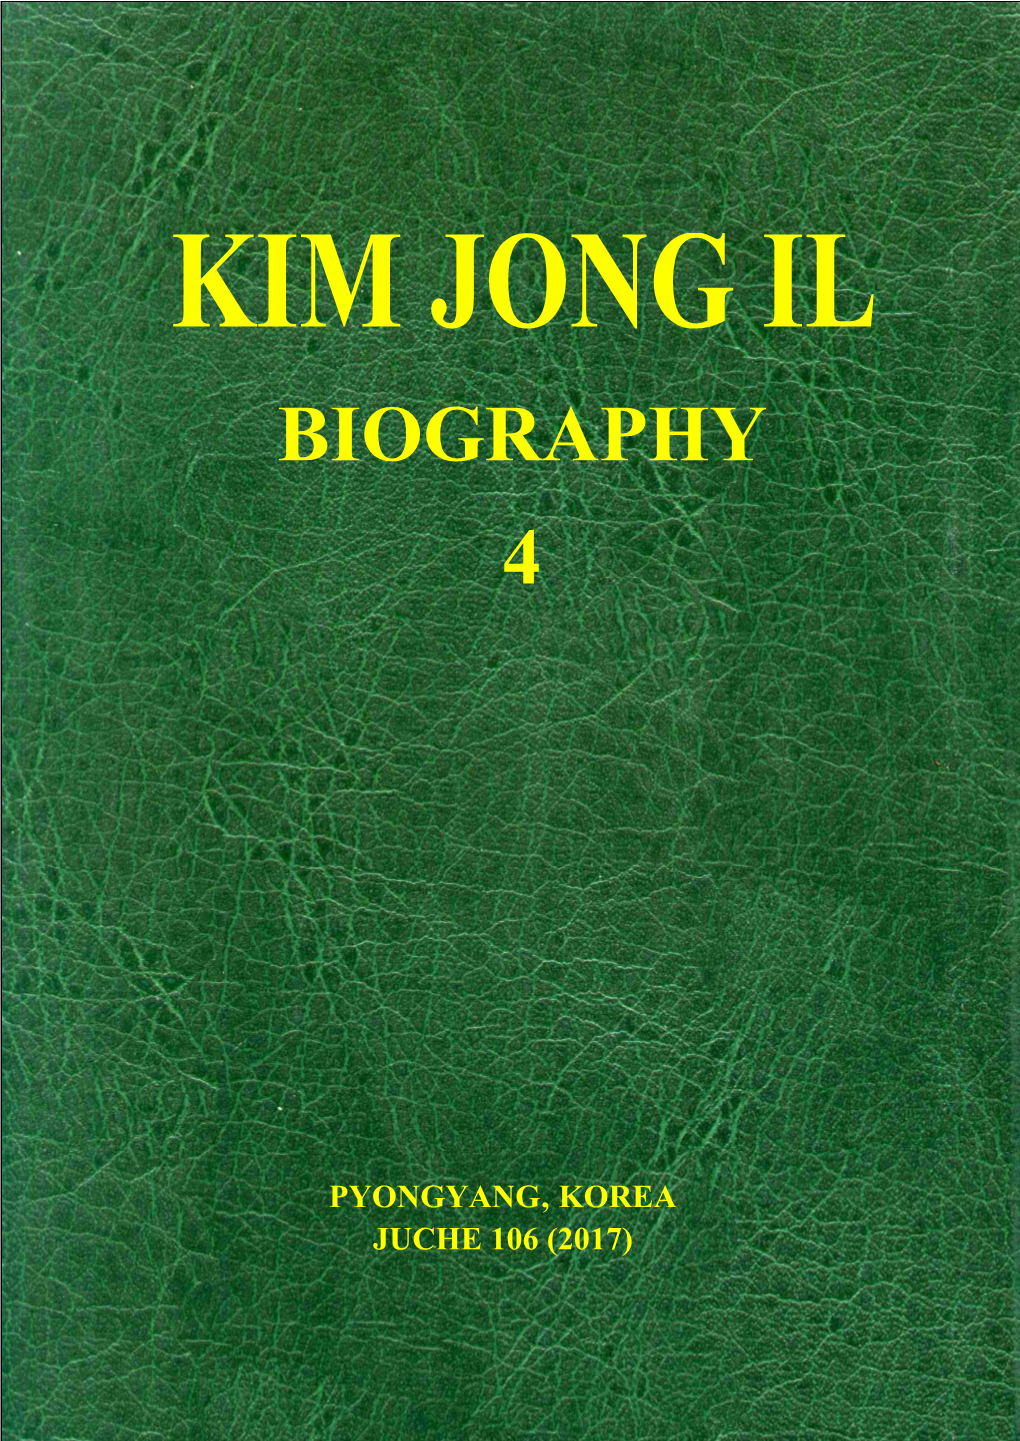 Kim Jong Il Biography 4